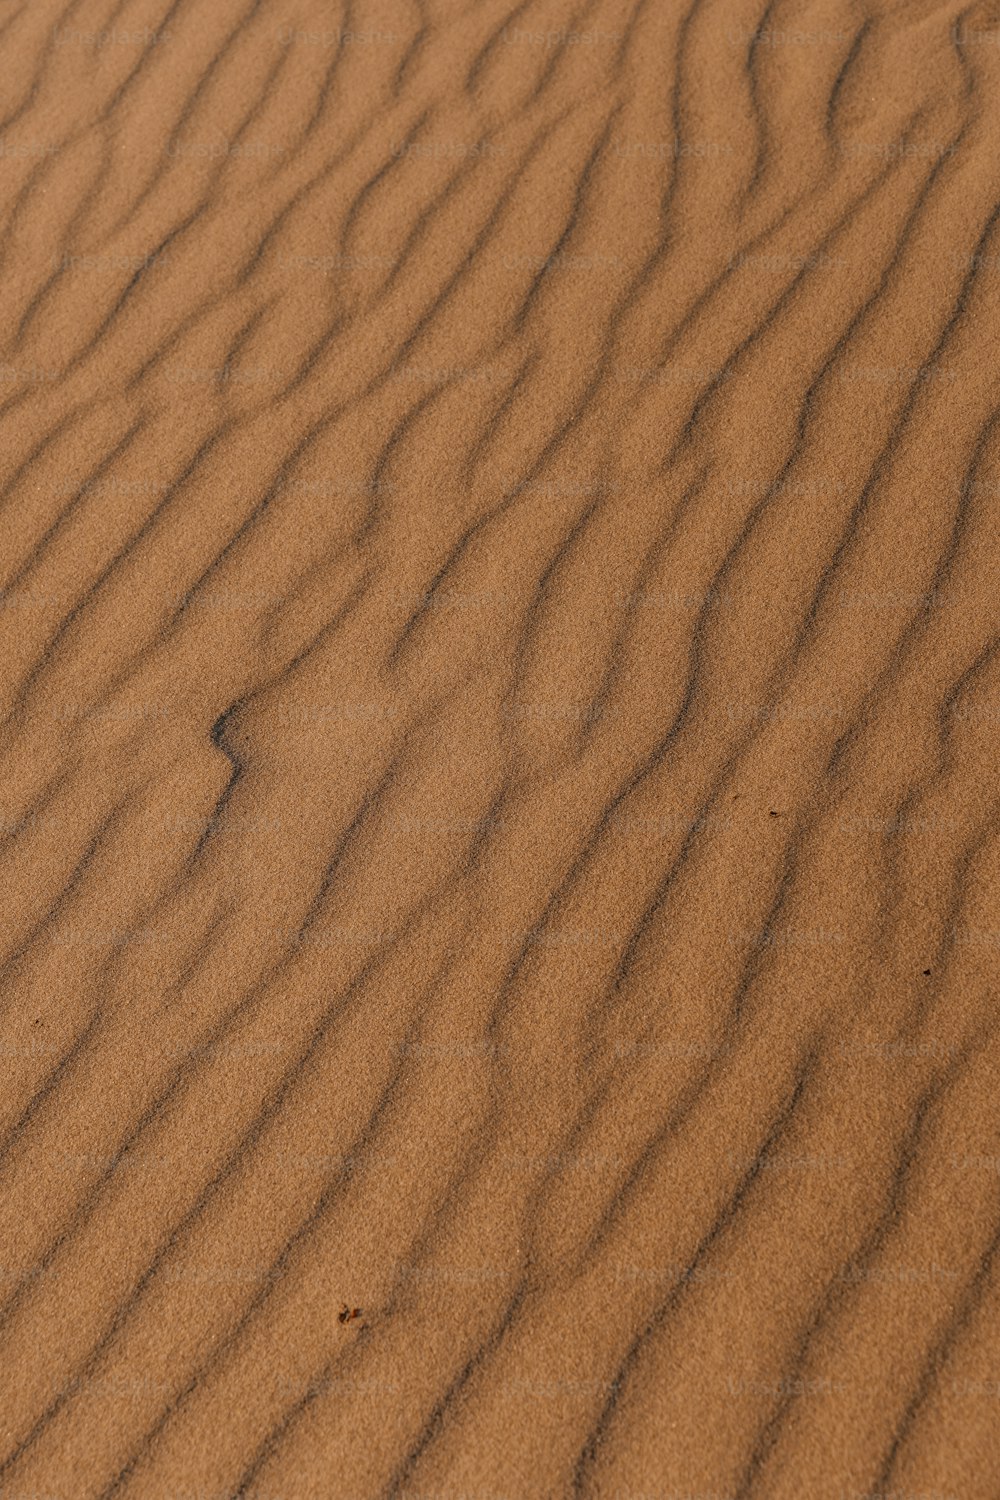 小さな草が生えている砂丘